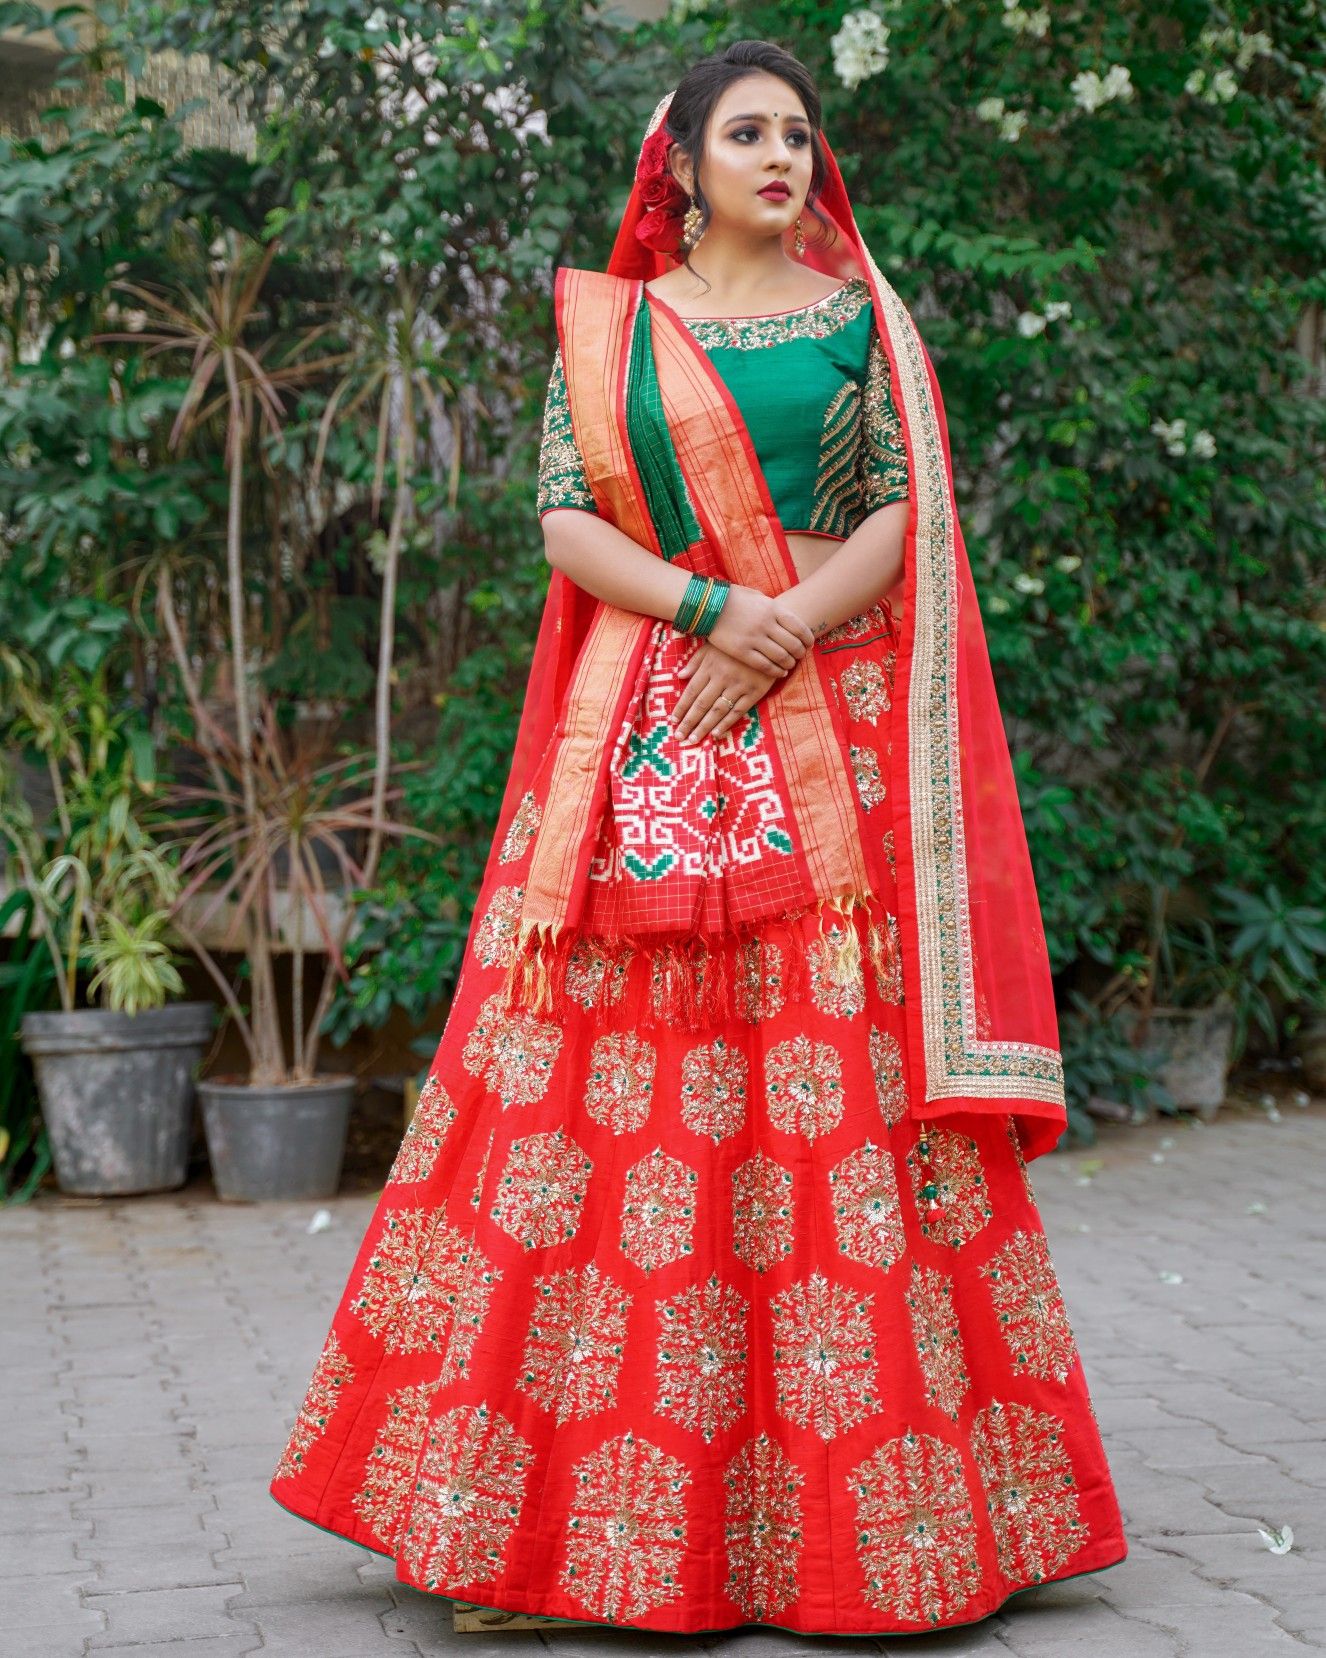 Unique Bridal Paithani Blouse Design